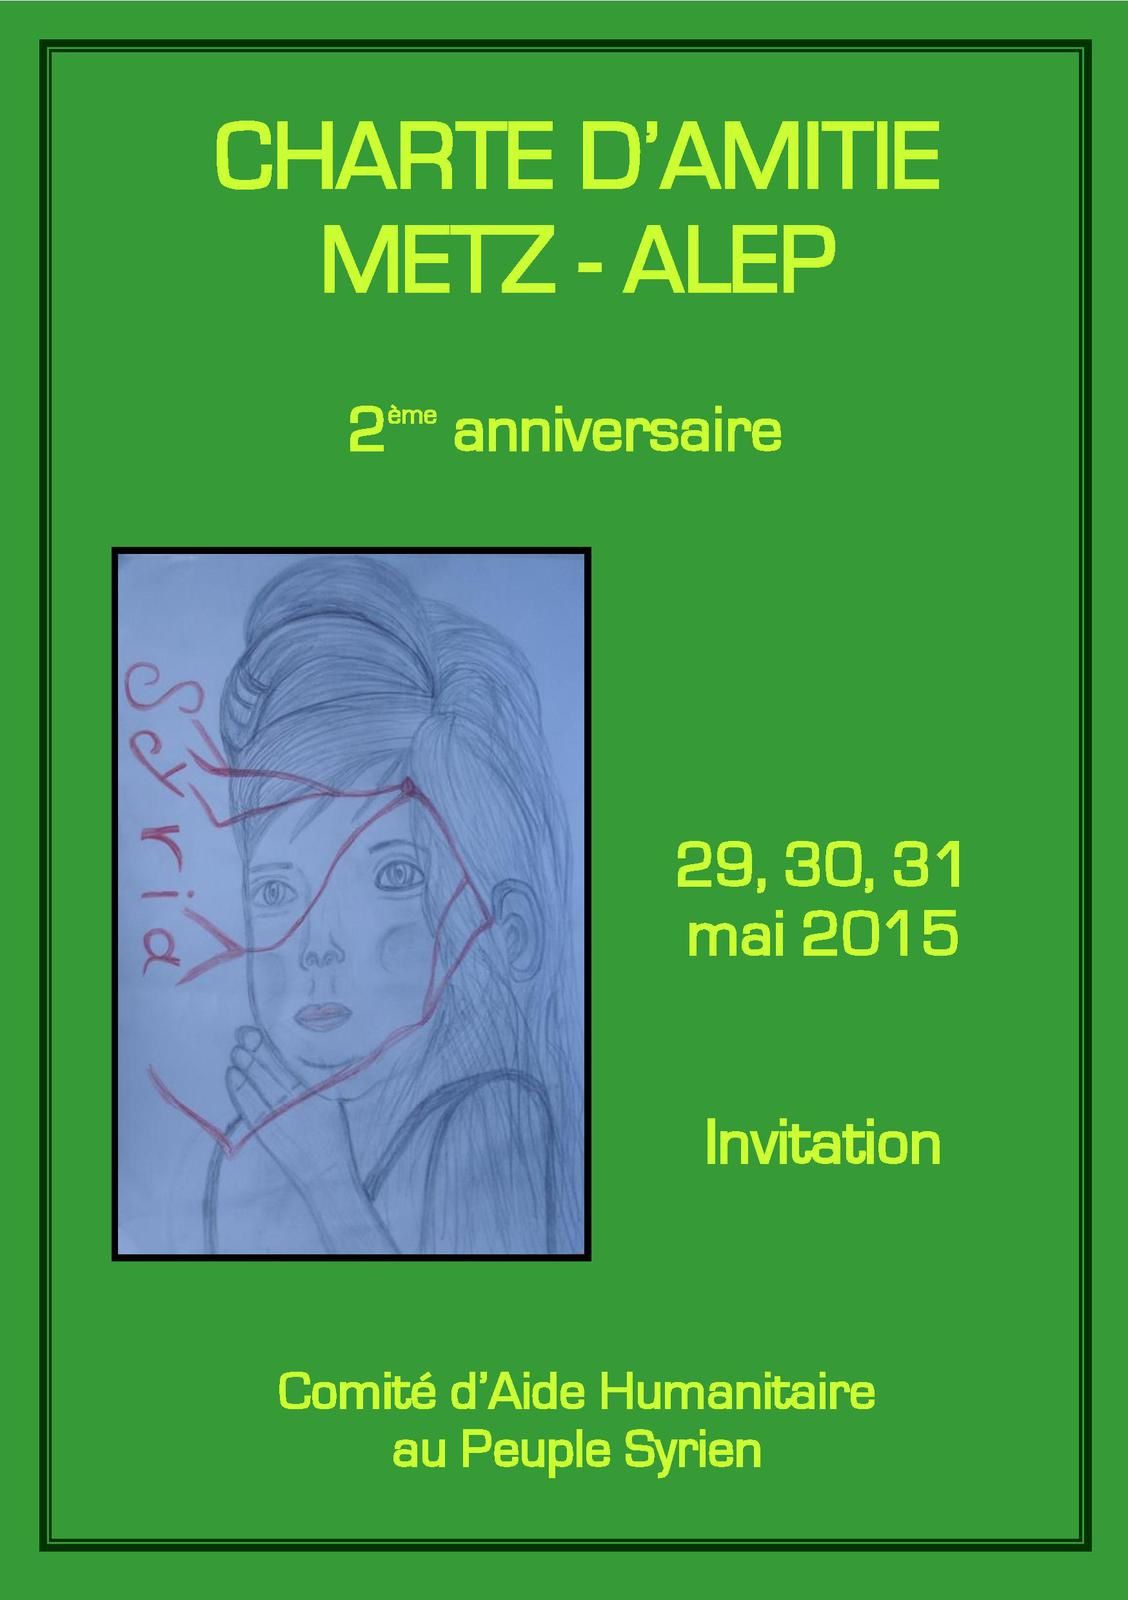 Anniversaire de la Charte d'Amitié Metz-Alep, 29/30/31 mai 2015